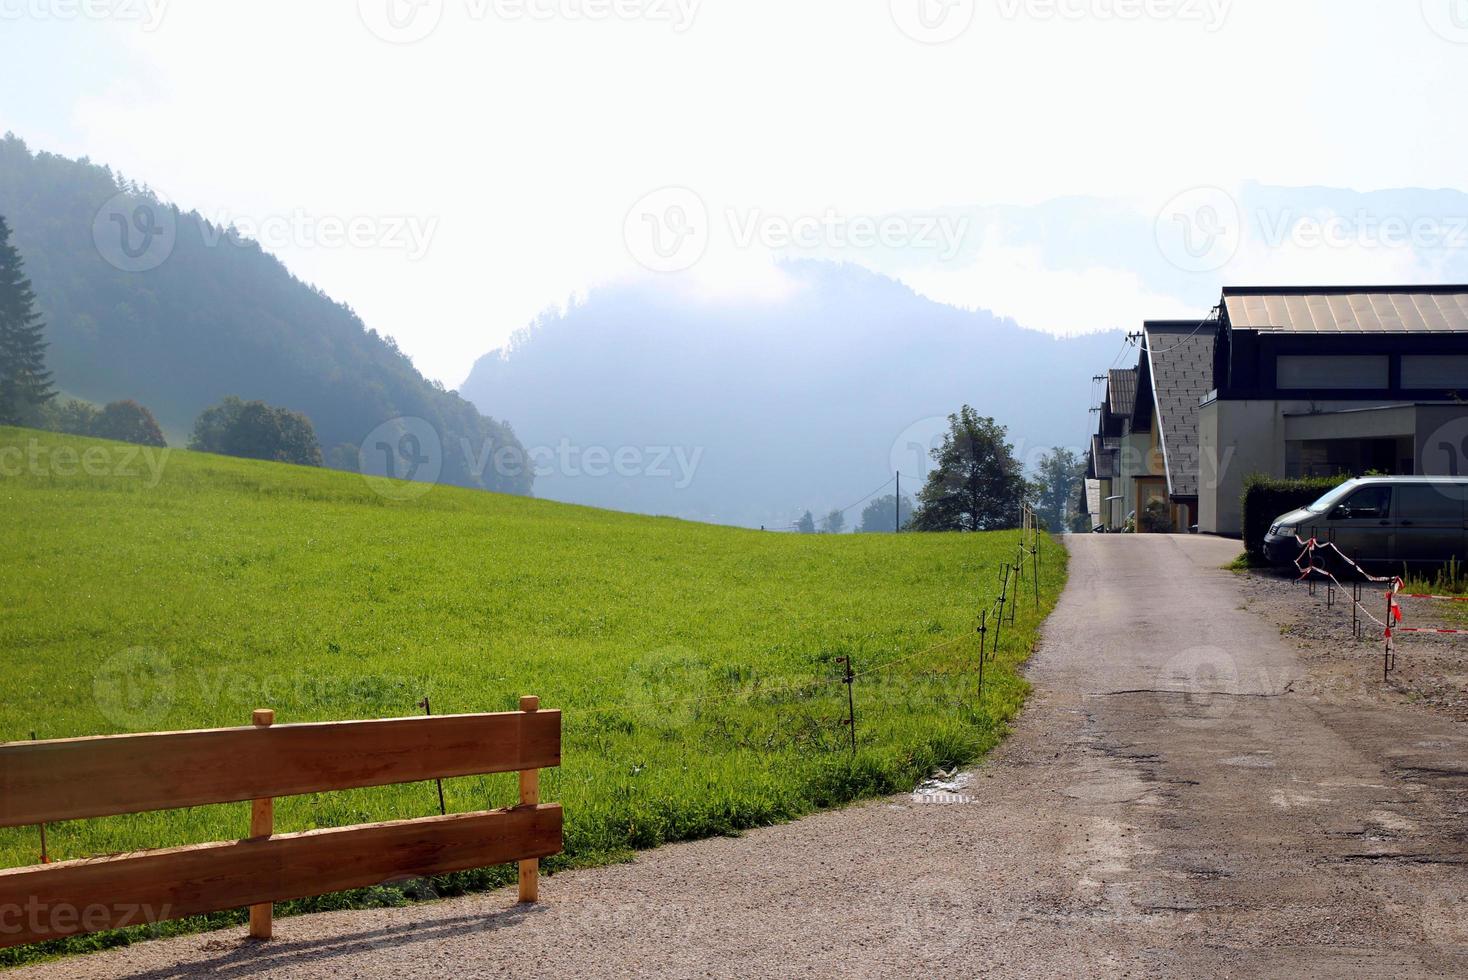 viaje a sankt-wolfgang, austria. la vista de la carretera cerca del prado verde con las casas y las montañas al fondo. foto